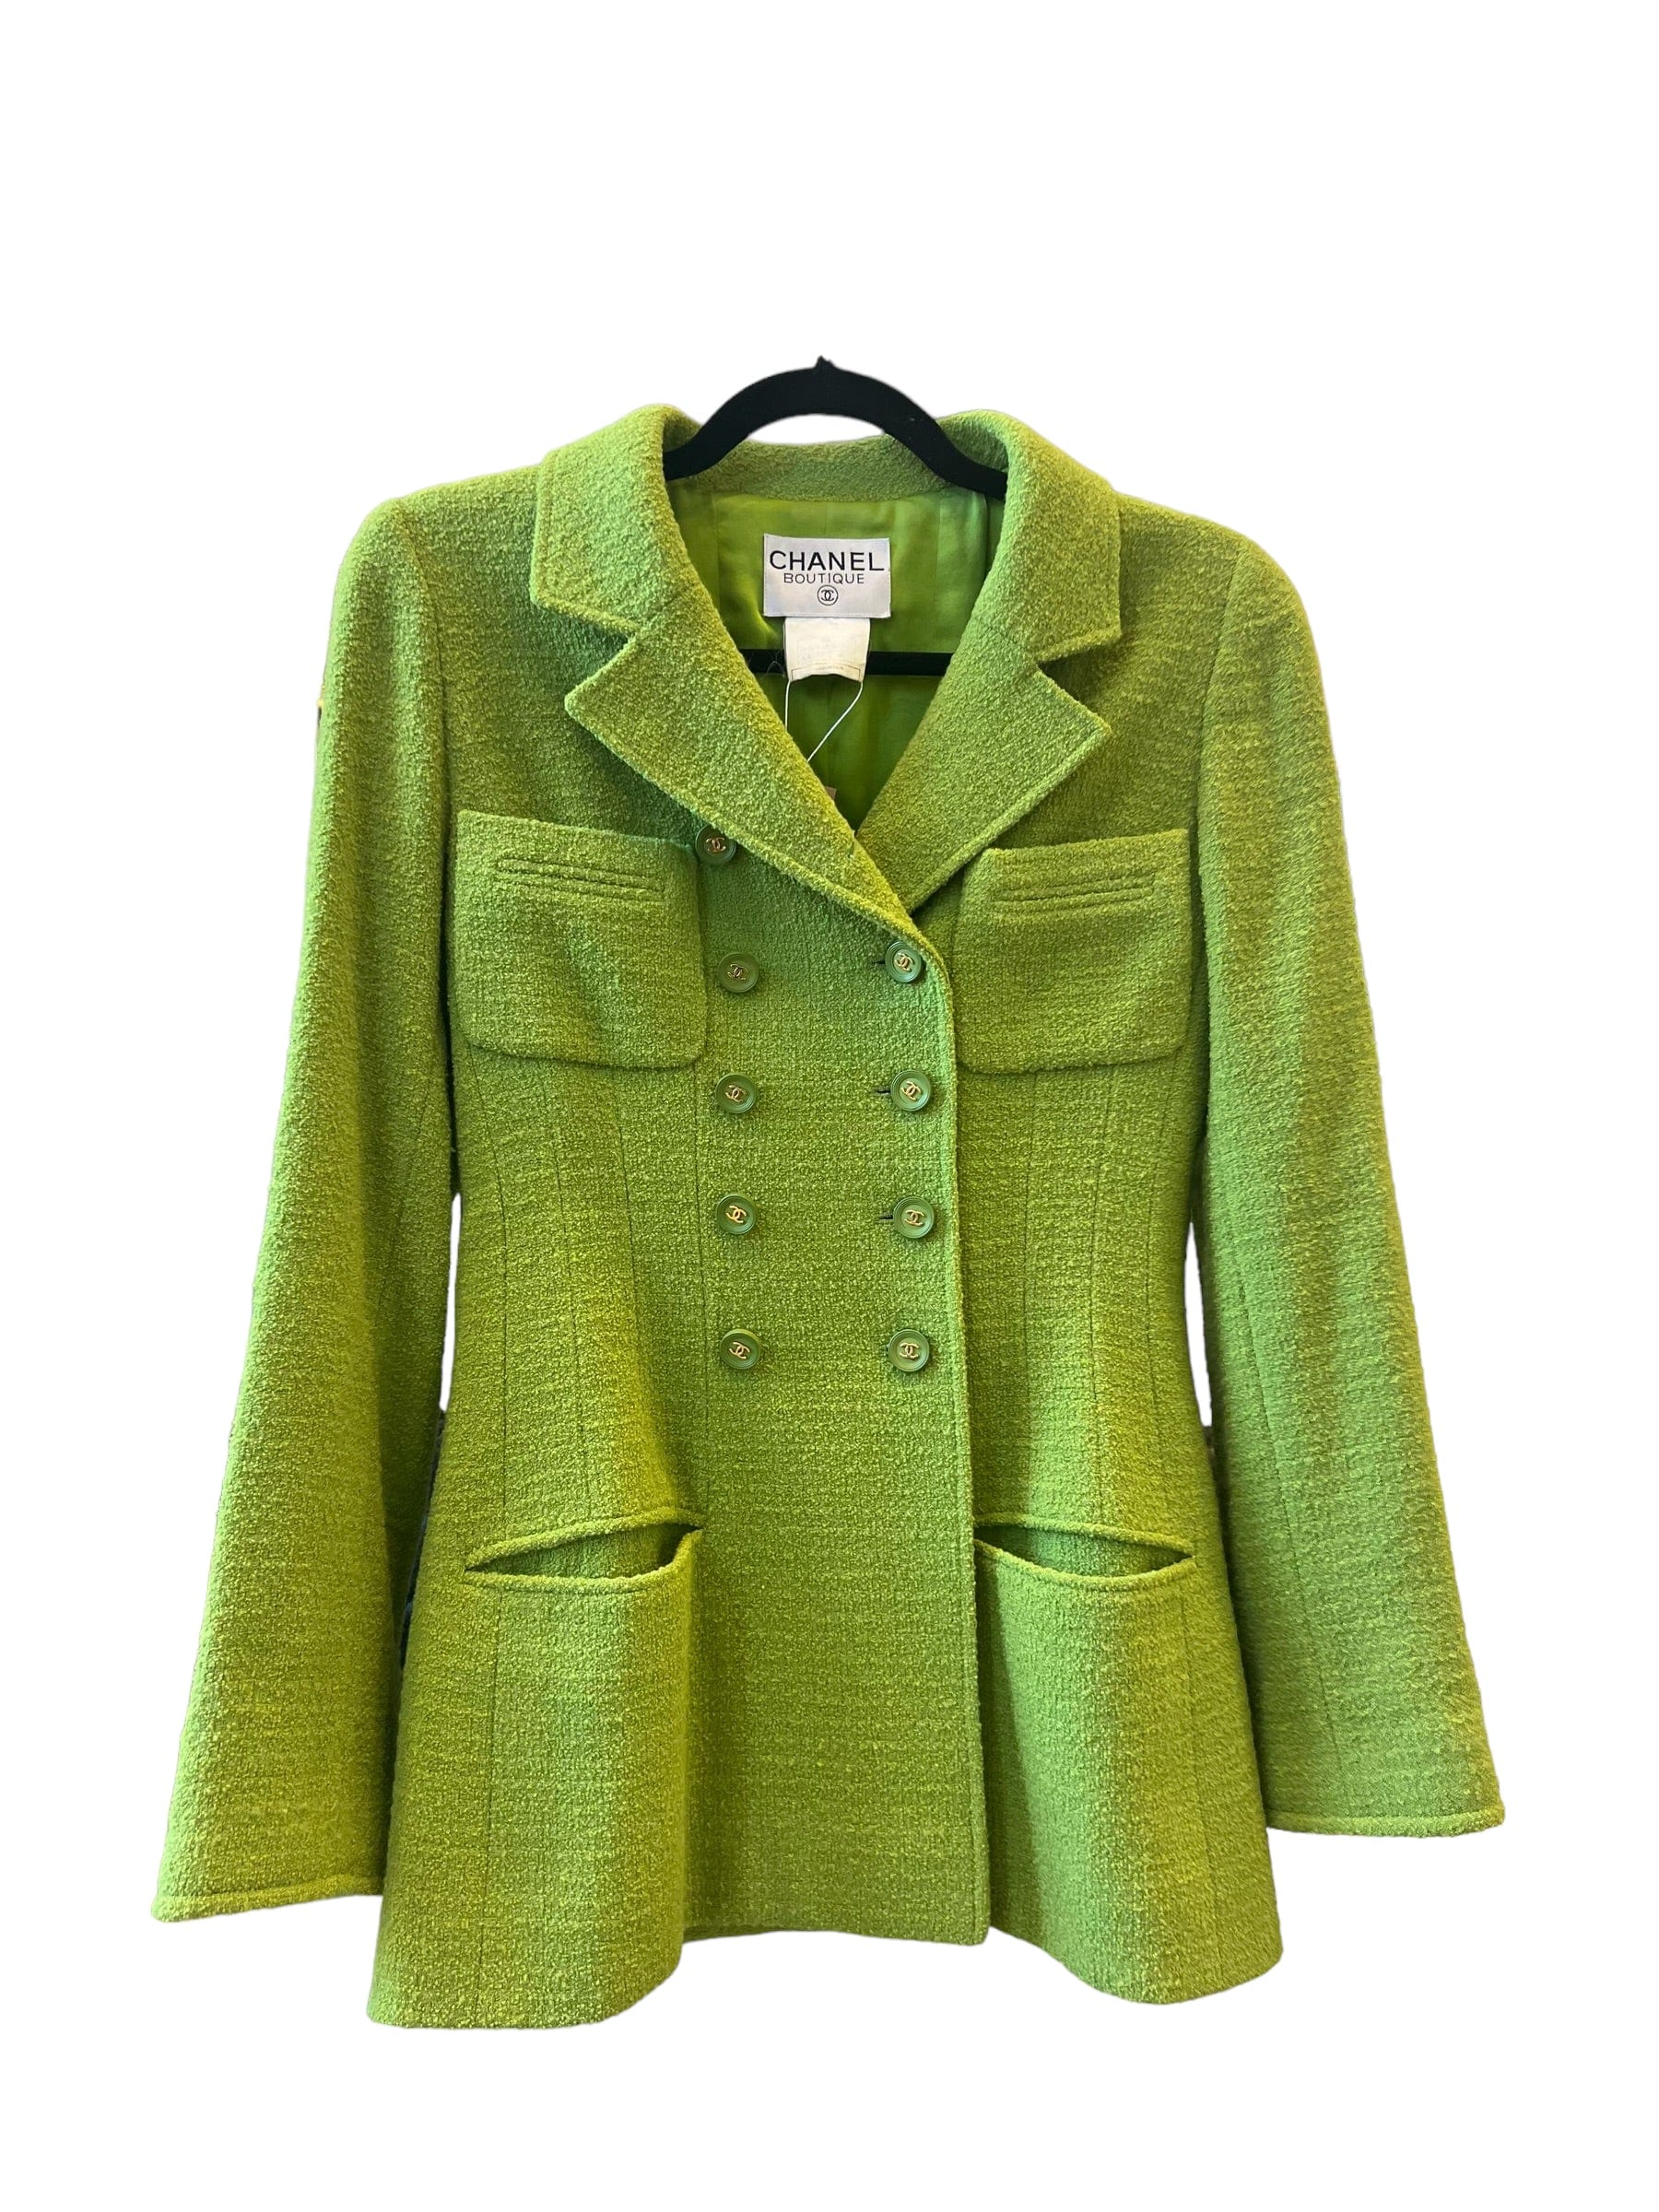 Chanel Chanel Green 90s Tweed Boucle Jacket UKL1374